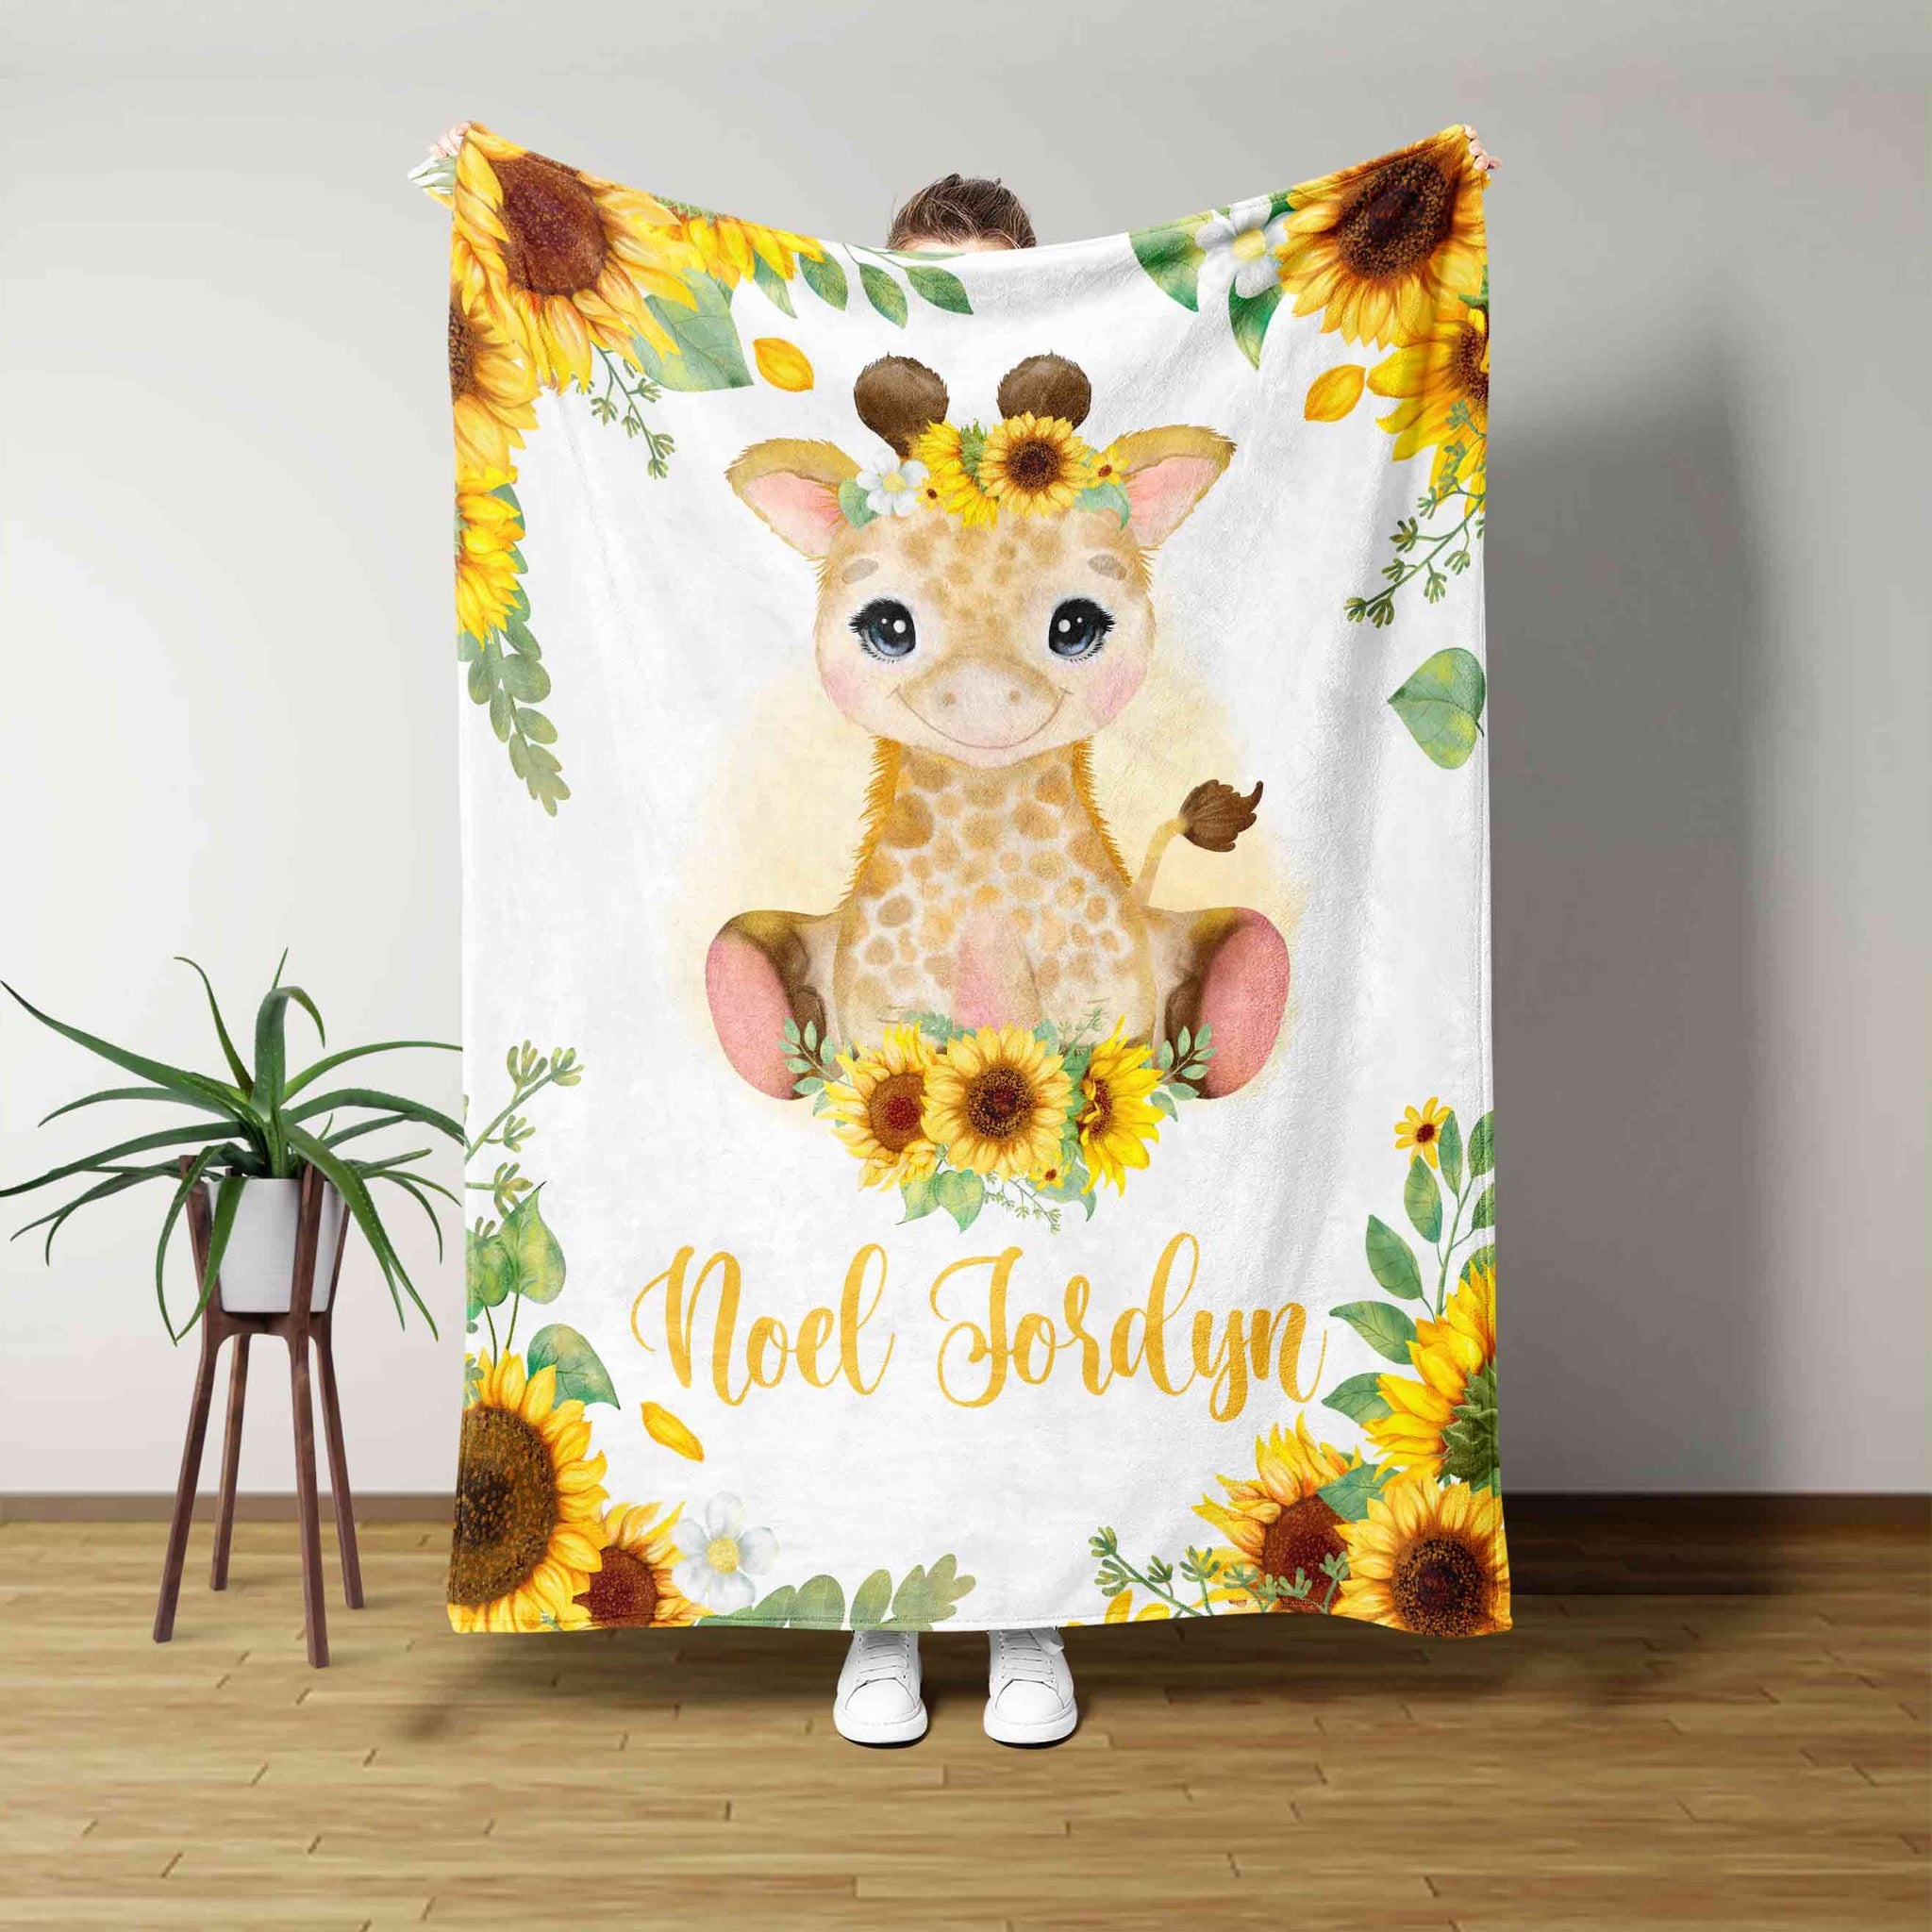 Custom Baby Blanket, Little Giraffe Blanket, Sunflower Blanket, Baby Blanket, Blanket For Baby, Gift Blanket